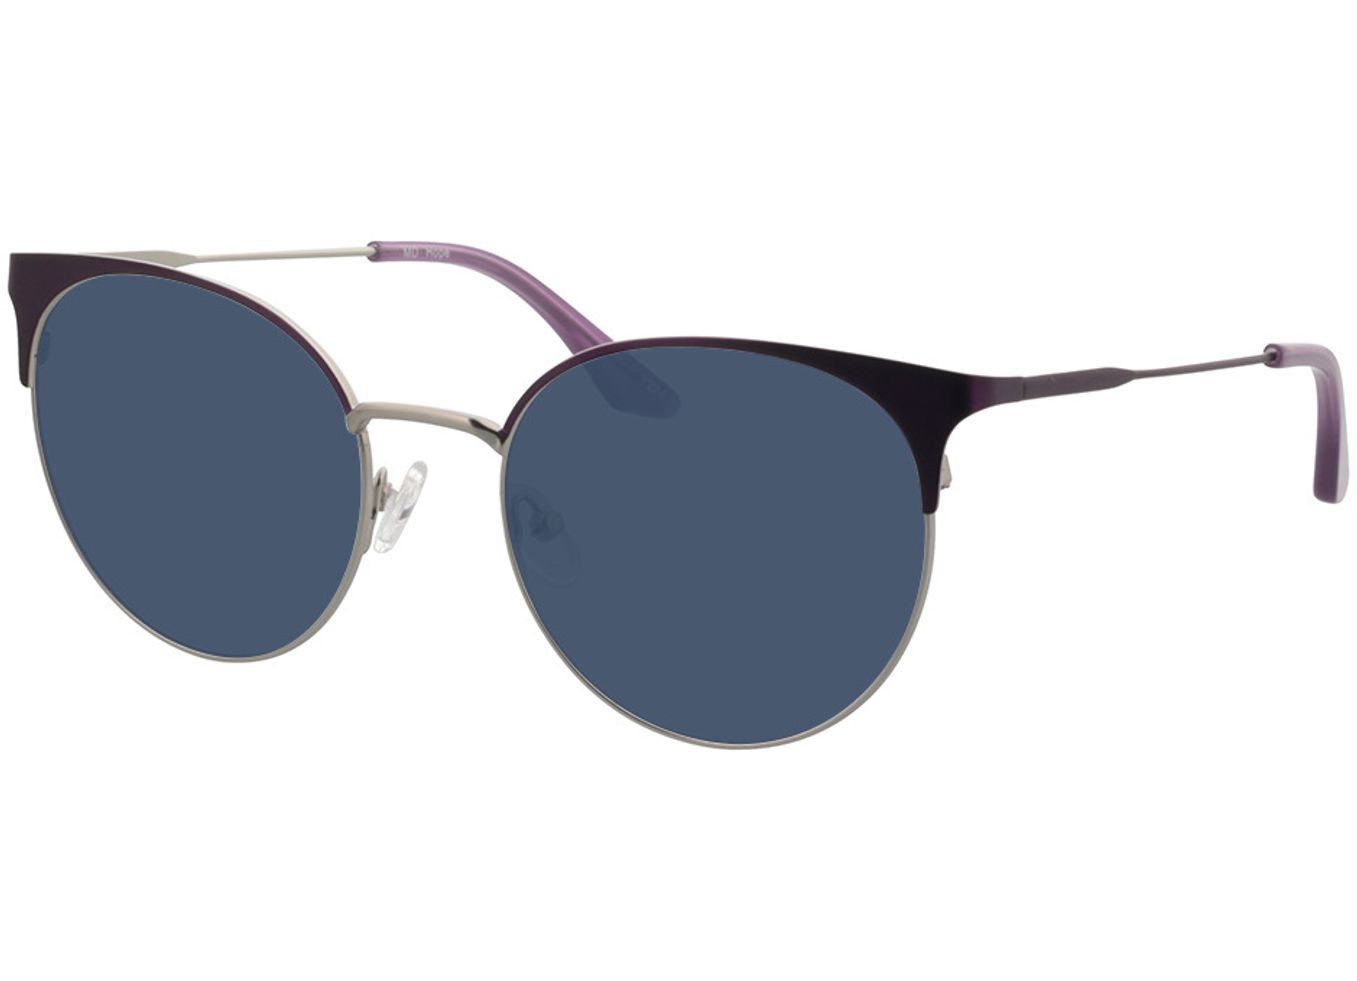 Hope - lila/silber Sonnenbrille mit Sehstärke, Vollrand, Cateye von Brille24 Collection